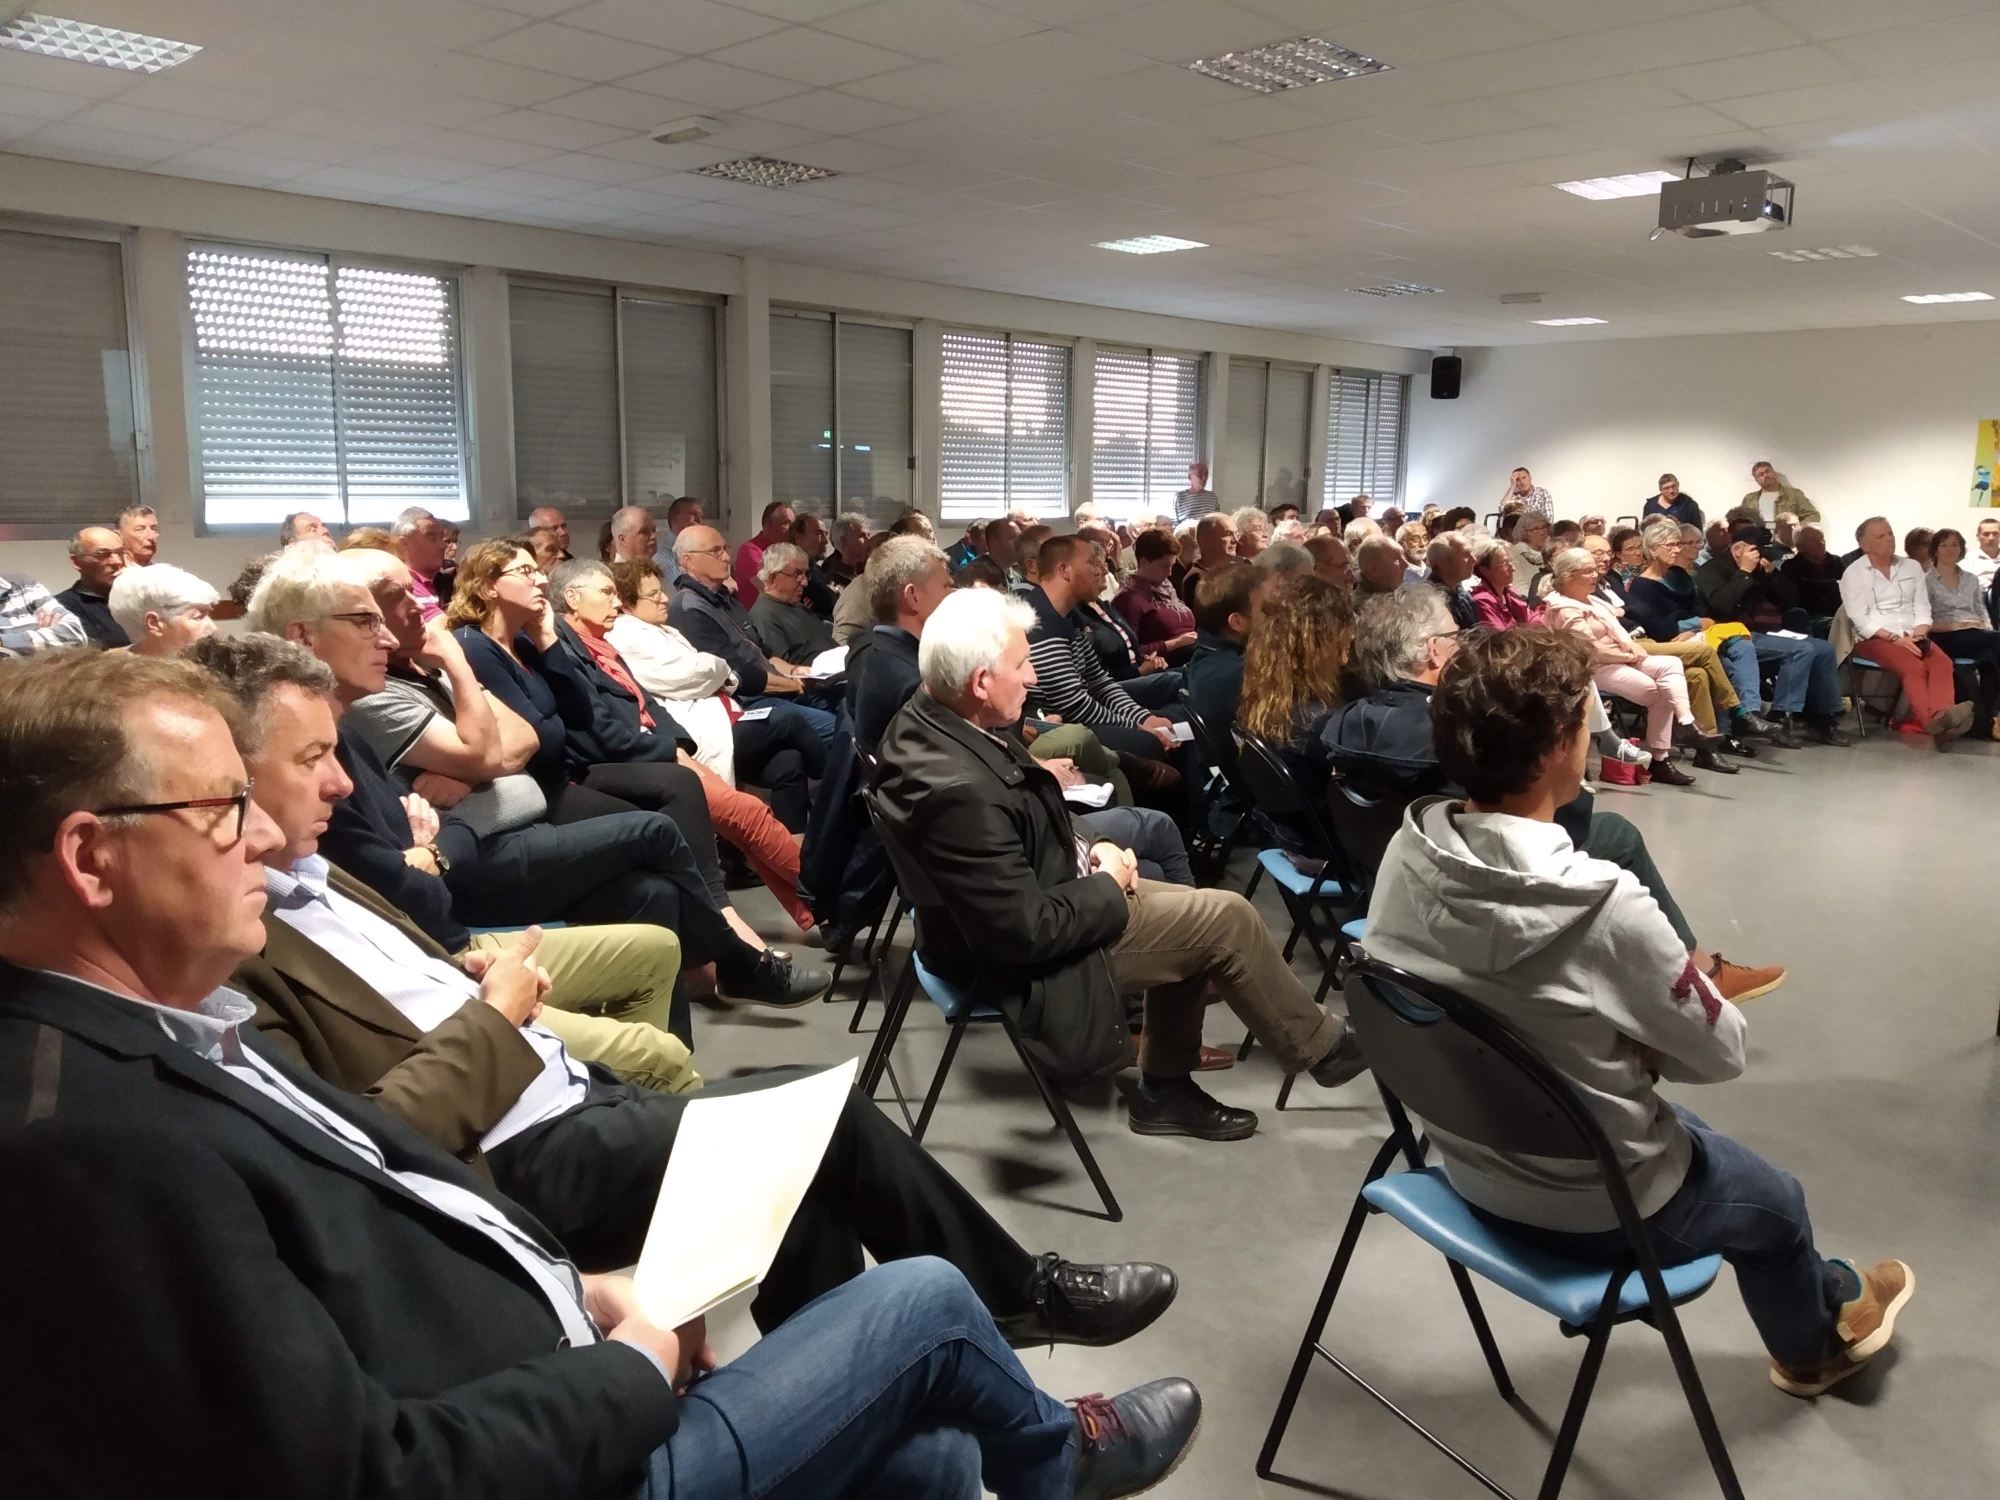 Les Infos du Pays Gallo, 8th of June 2019: Ploërmel - Lac au Duc packed the meeting